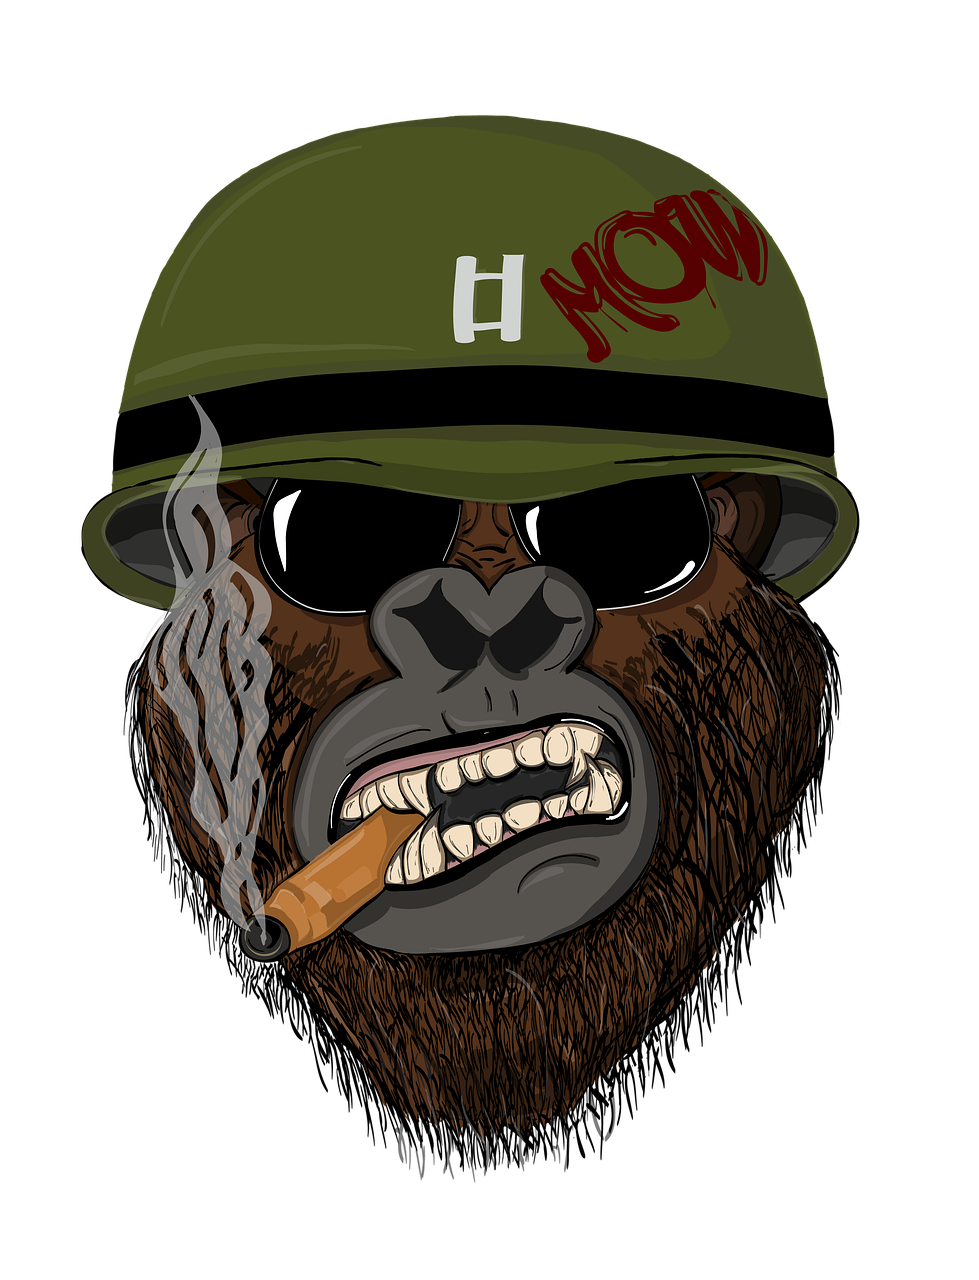 monkey soldier, gorilla soldier, war monkey-5113779.jpg